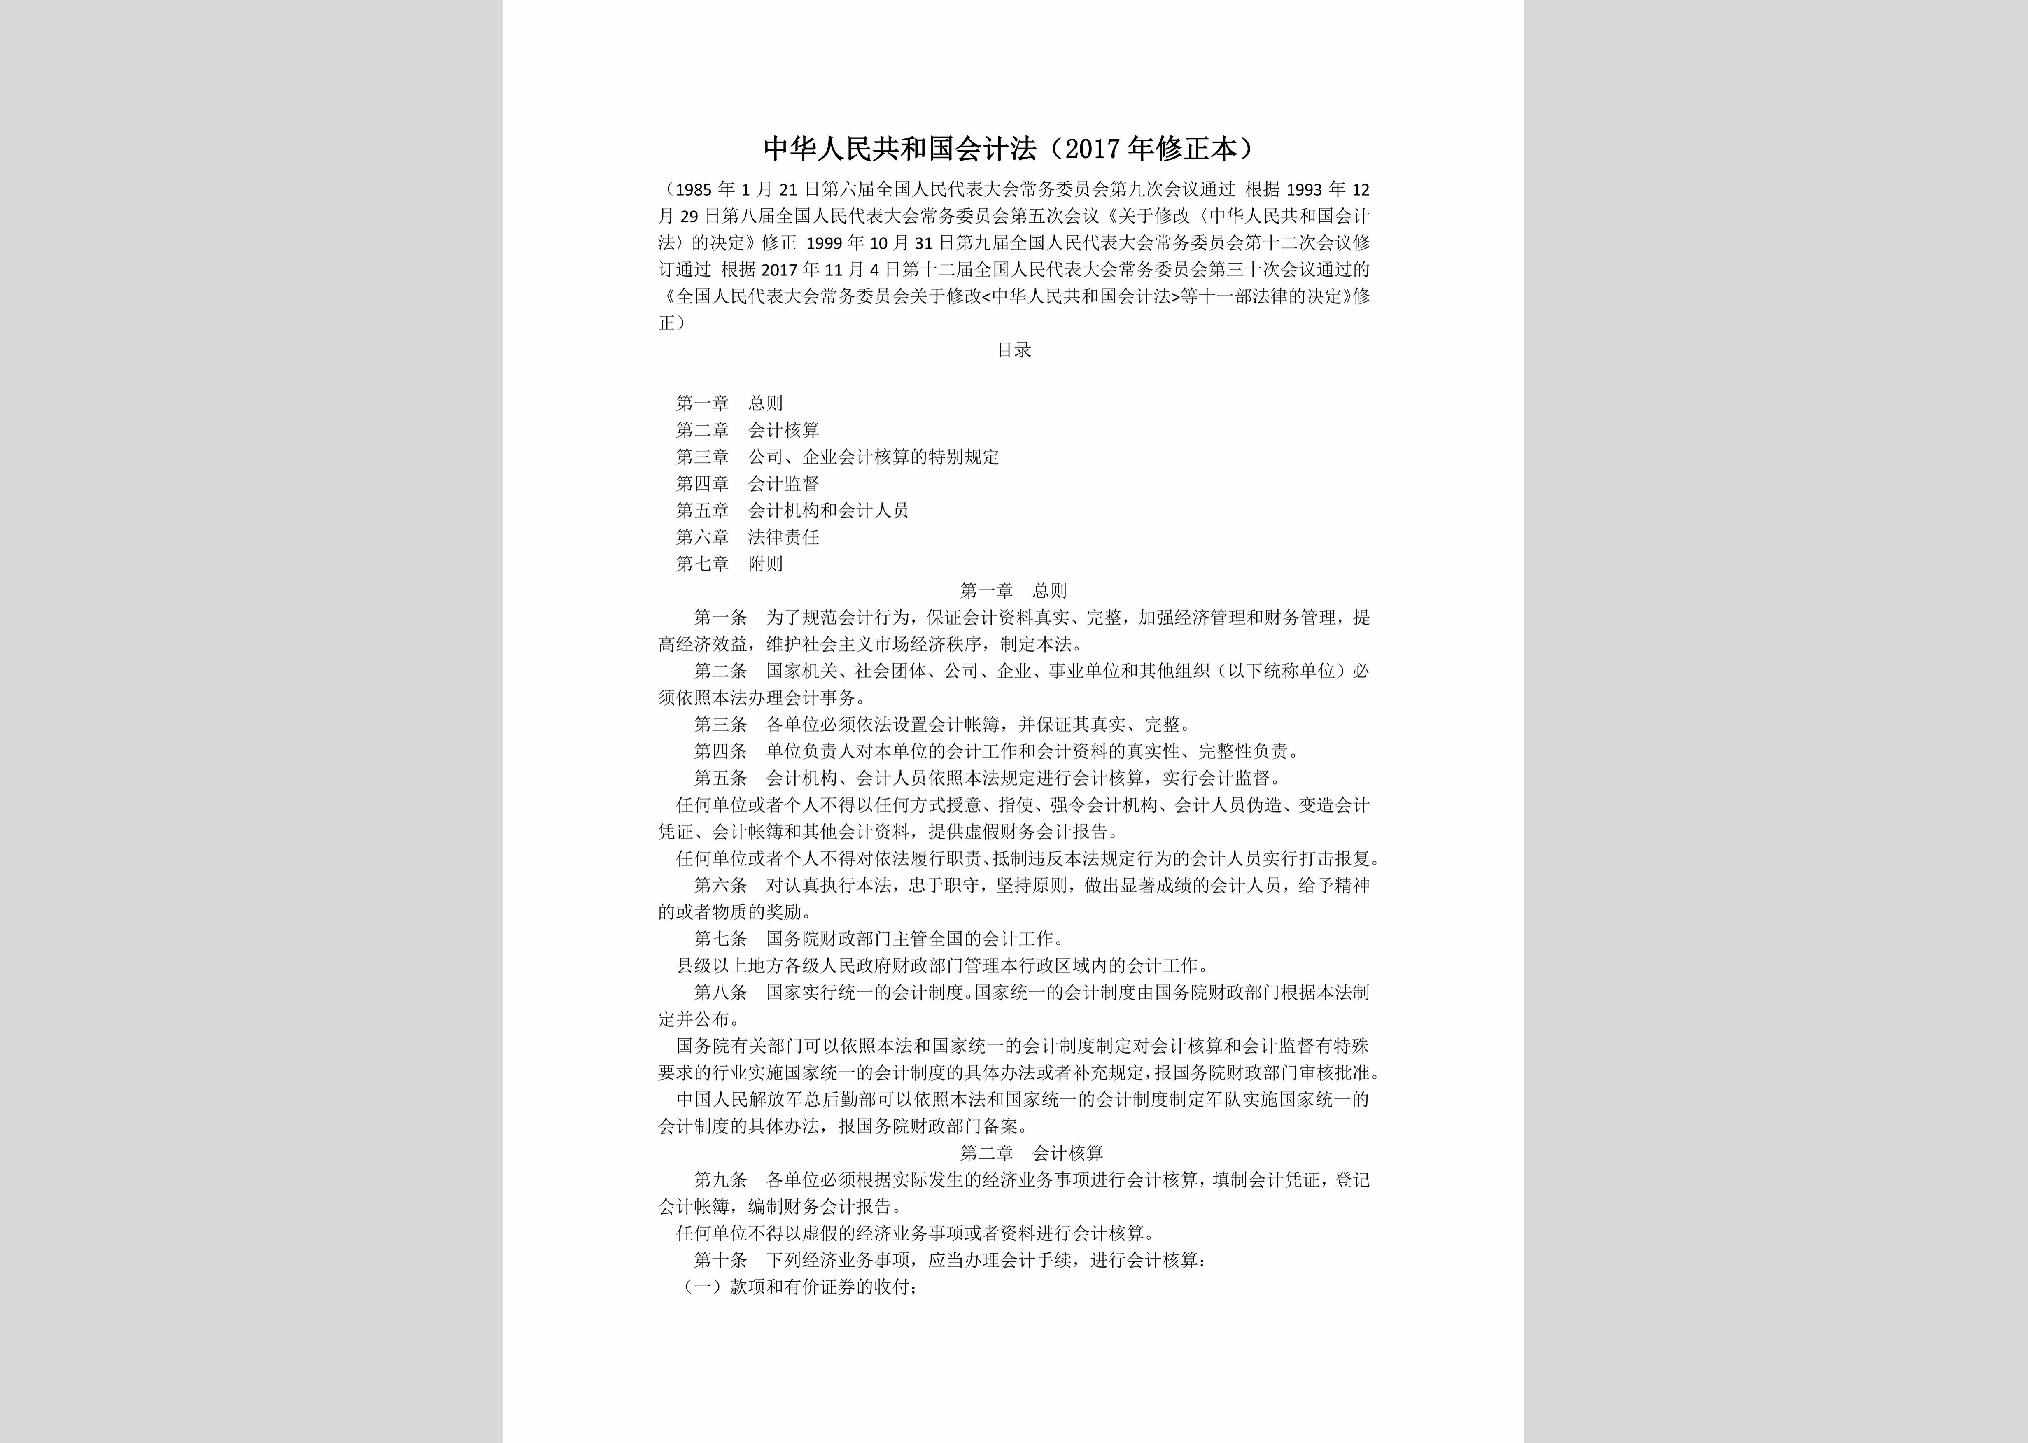 KJF-2017：中华人民共和国会计法（2017年修正本）